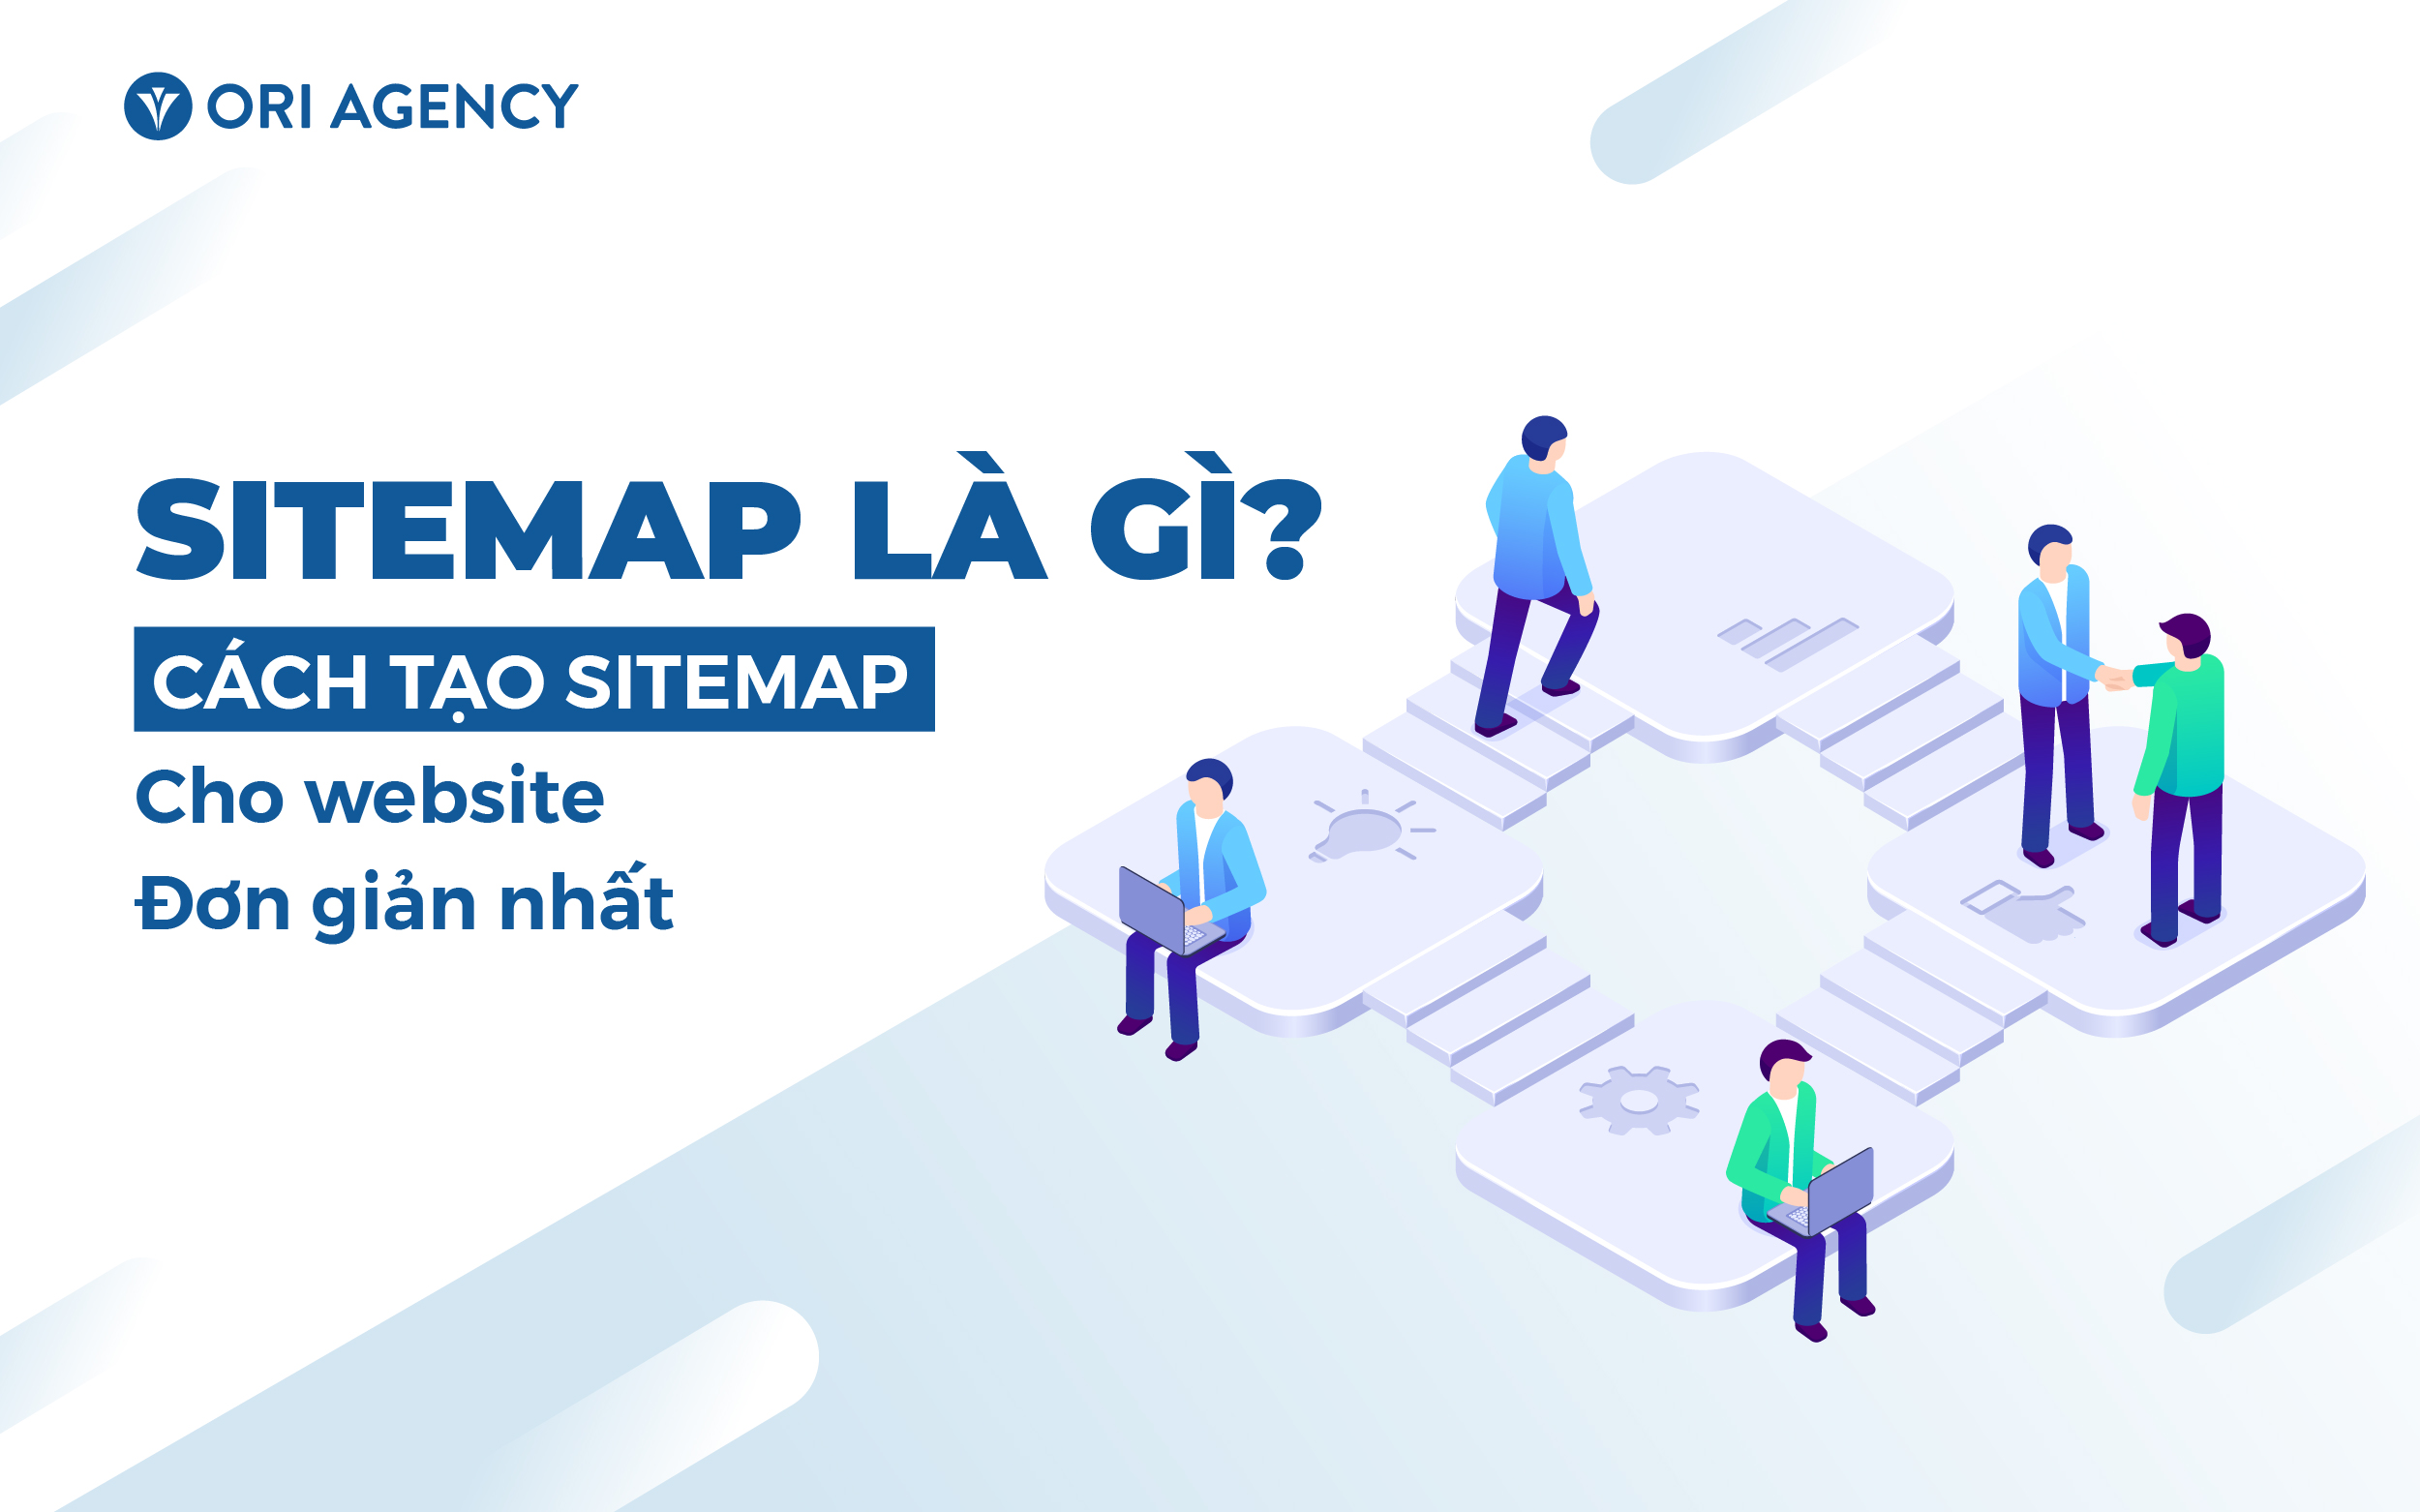 Sitemap là gì? Cách tạo sitemap cho website đơn giản nhất